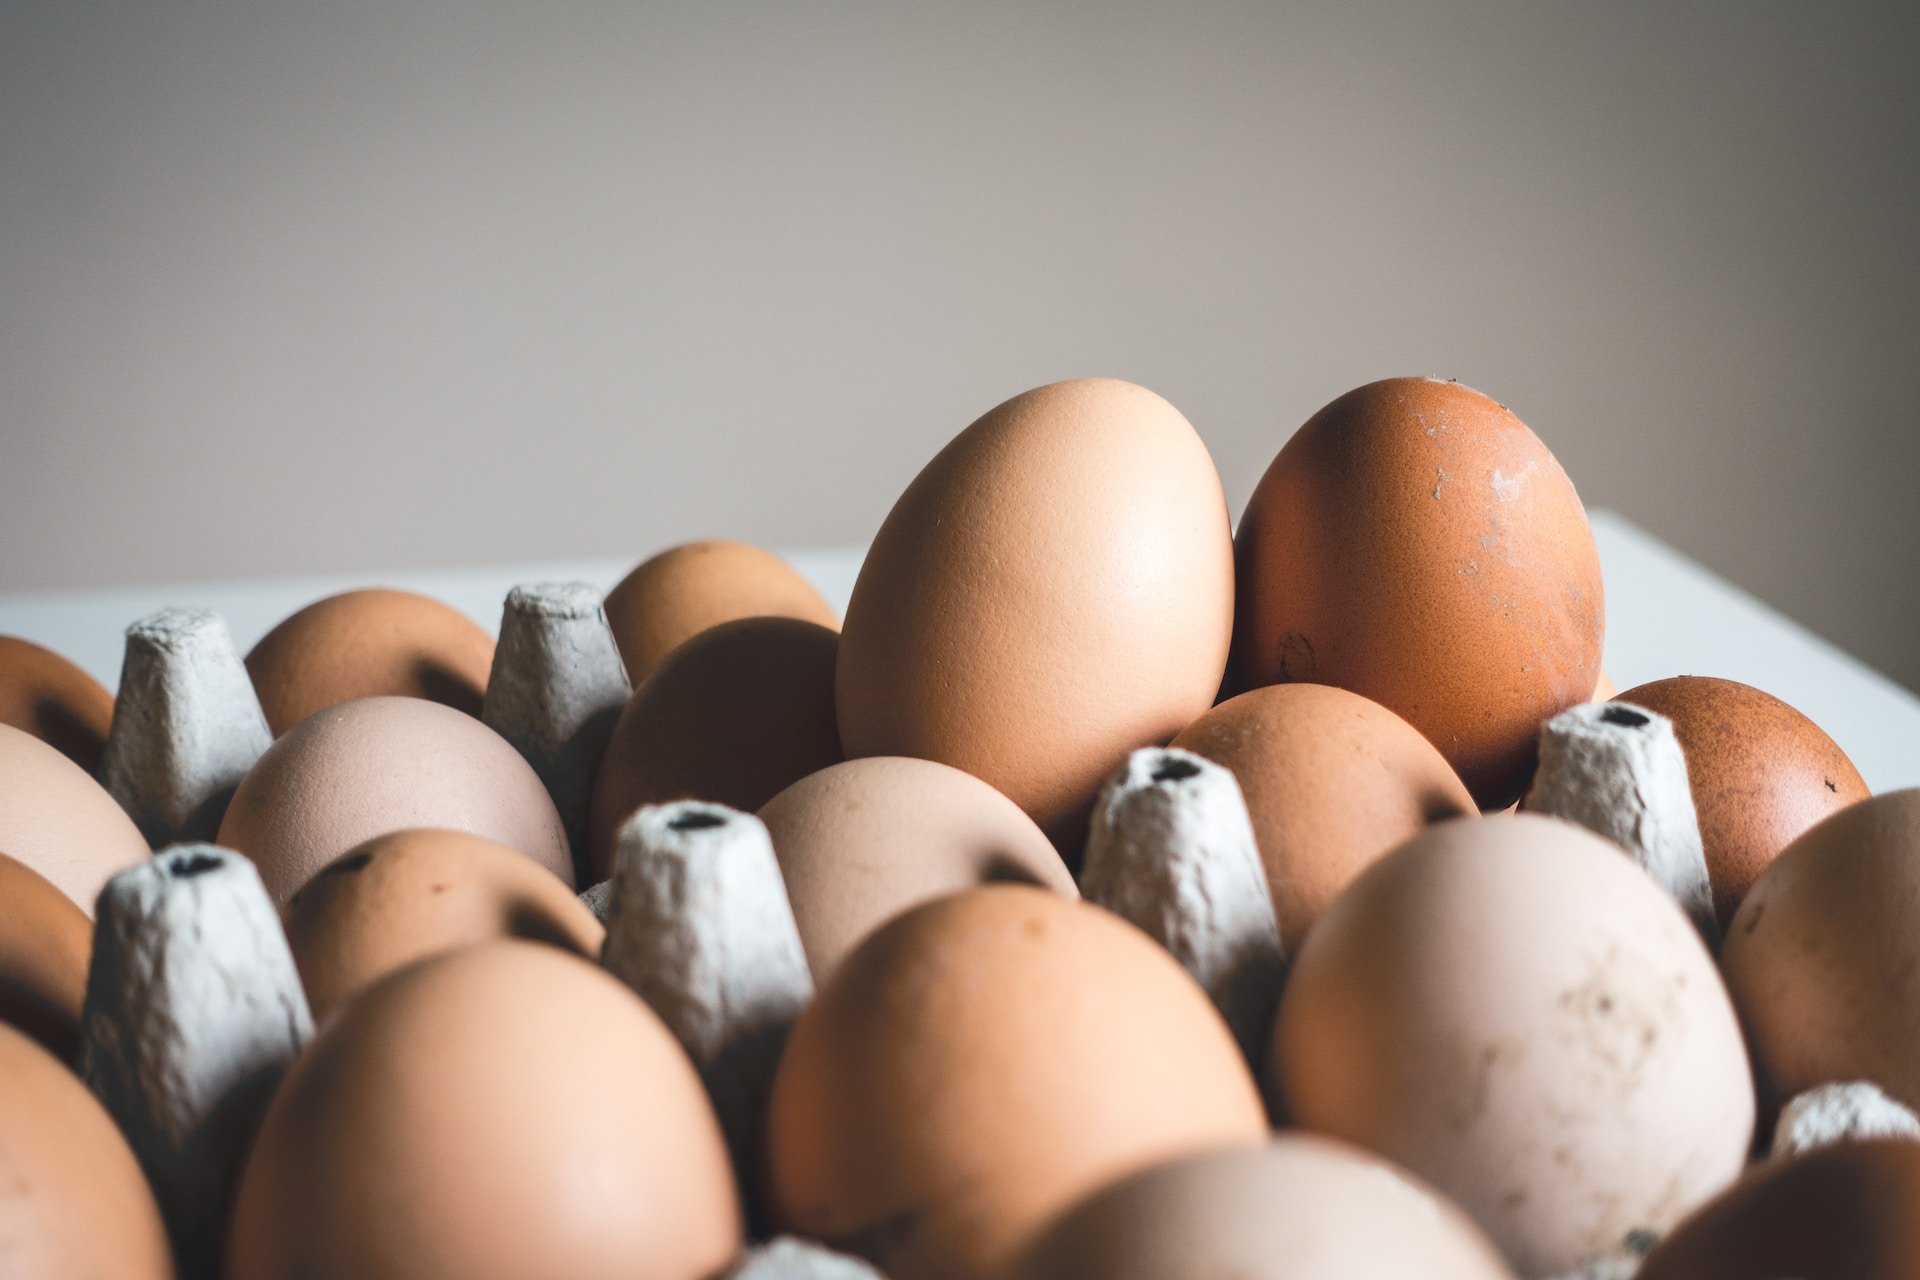 Распространение куриных яиц с высокопатогенным гриппом птиц предотвратили в Удмуртии